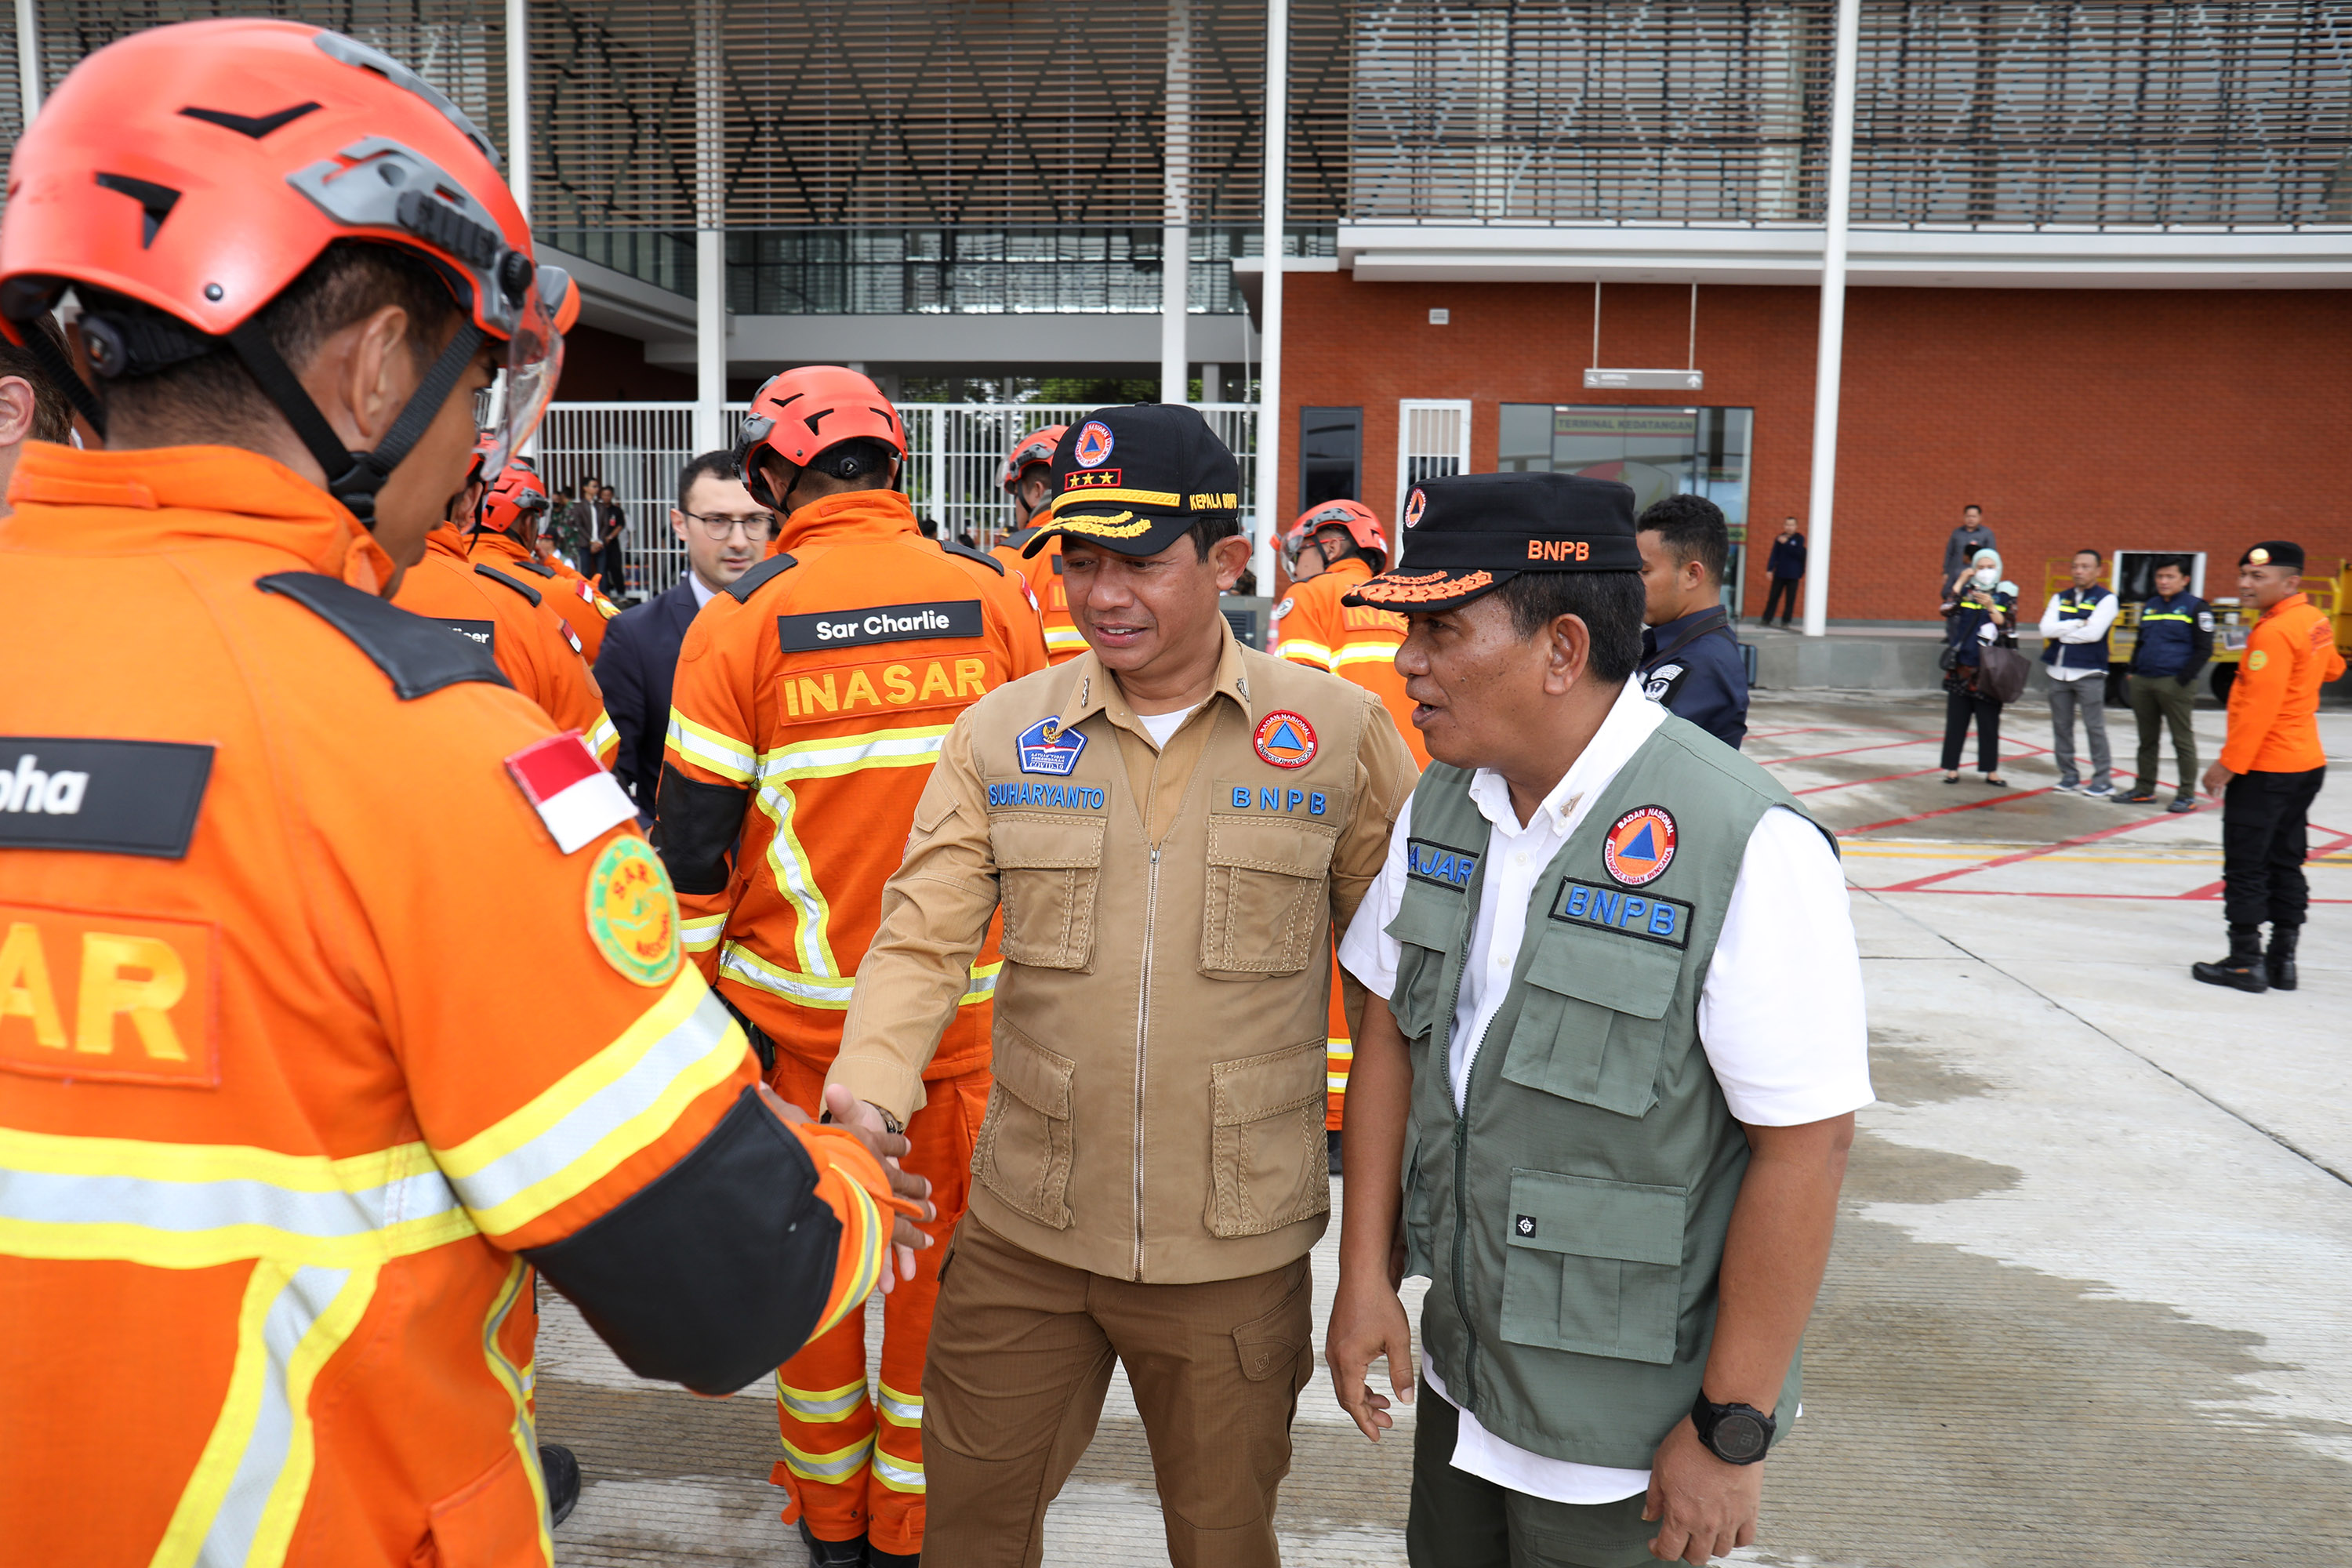 Kepala BNPB Letjen TNI Suharyanto S.Sos., M.M., (rompi colekat) menyalami salah satu personel usai melaksanakan misi kemanusiaan untuk Turkiye di Lanud Halim Perdanakusuma, Jakarta, Jumat (24/2).